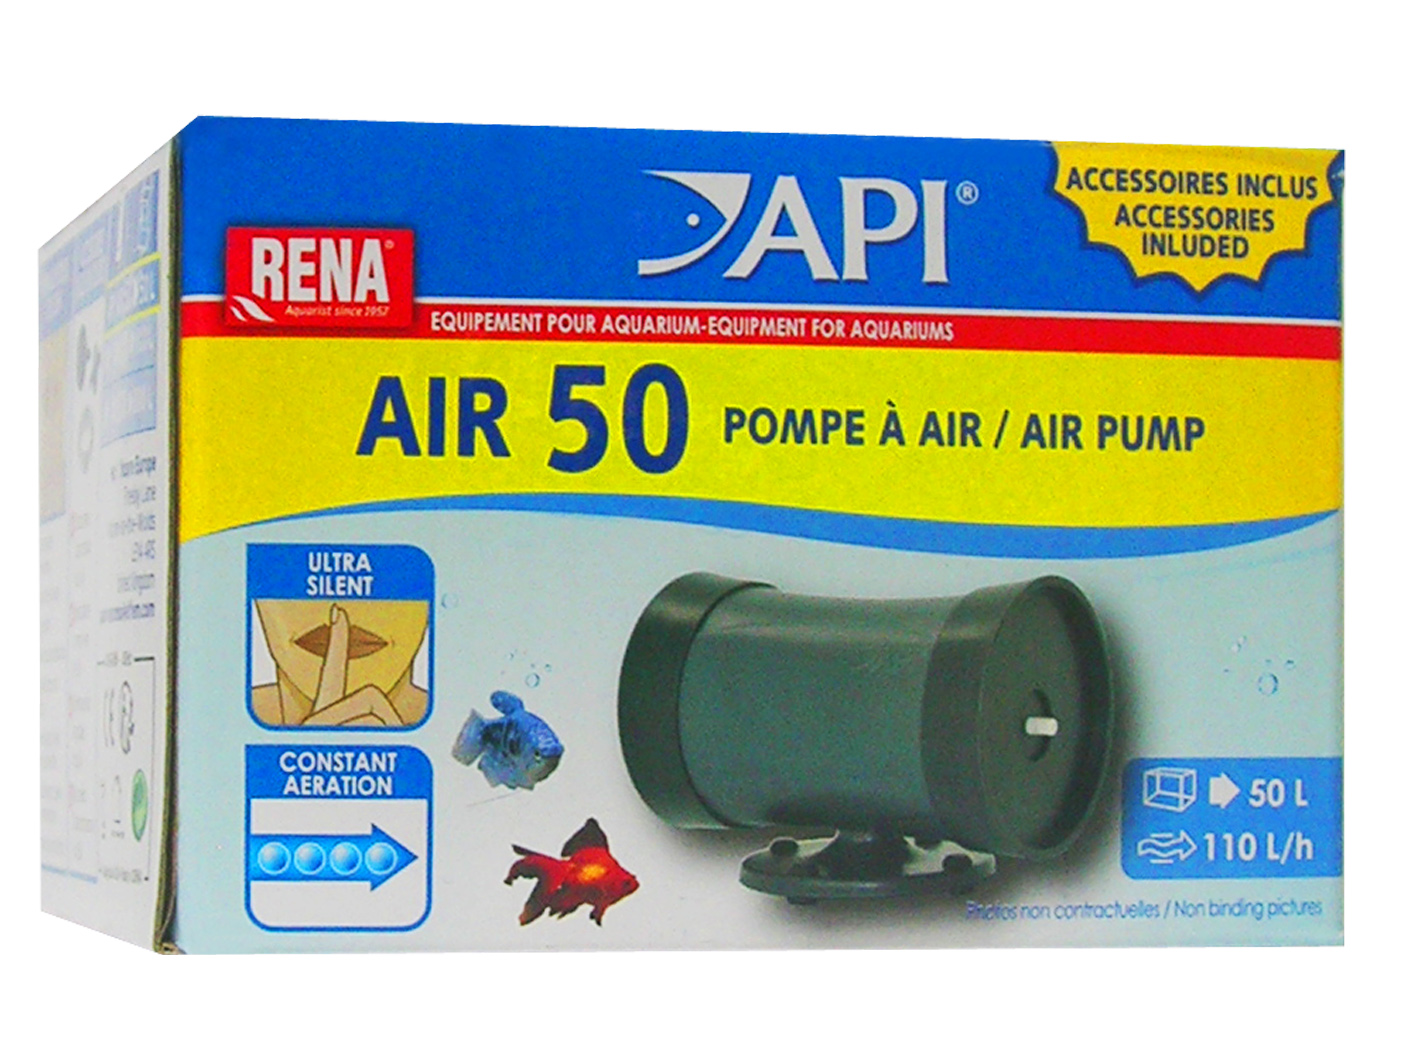 TETRA - APS 50 Blanche - Pompe à air pour aquarium 50 l/h